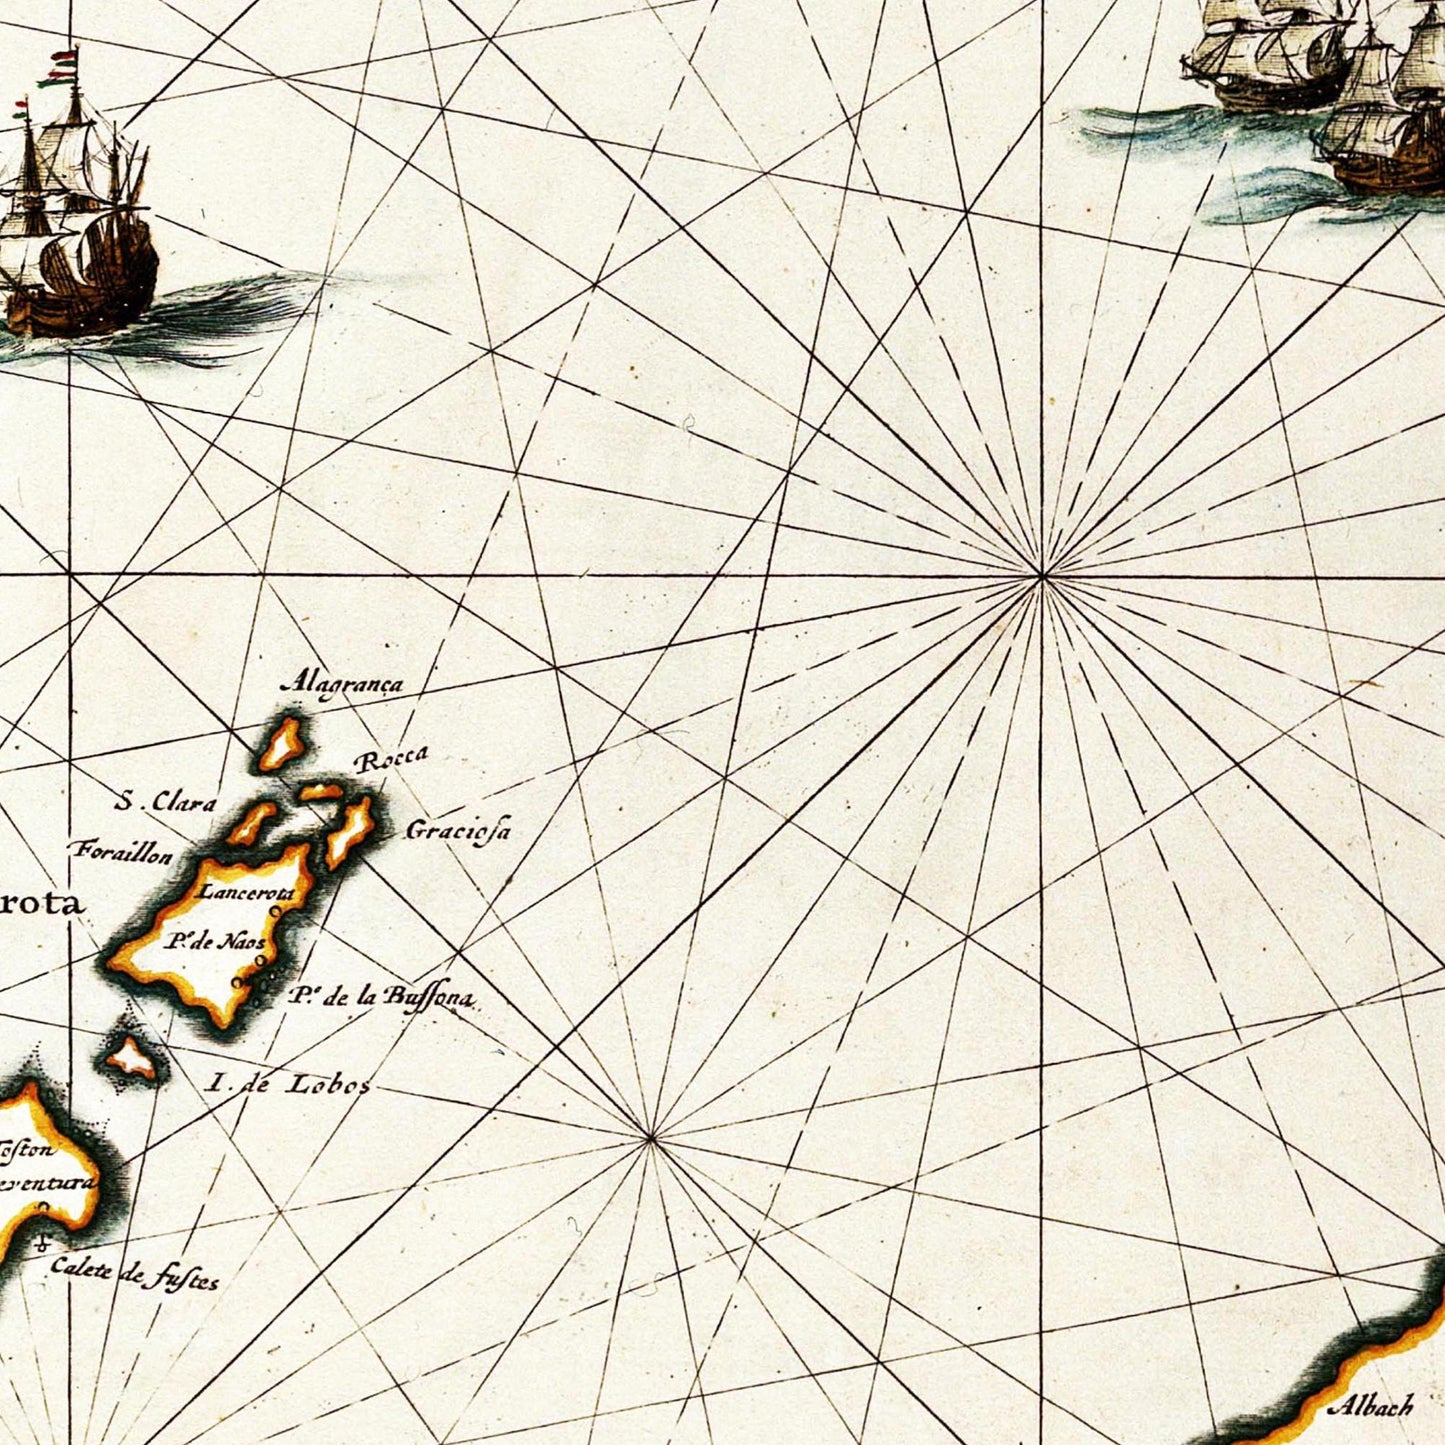 Historische Landkarte Kanarische Inseln um 1690